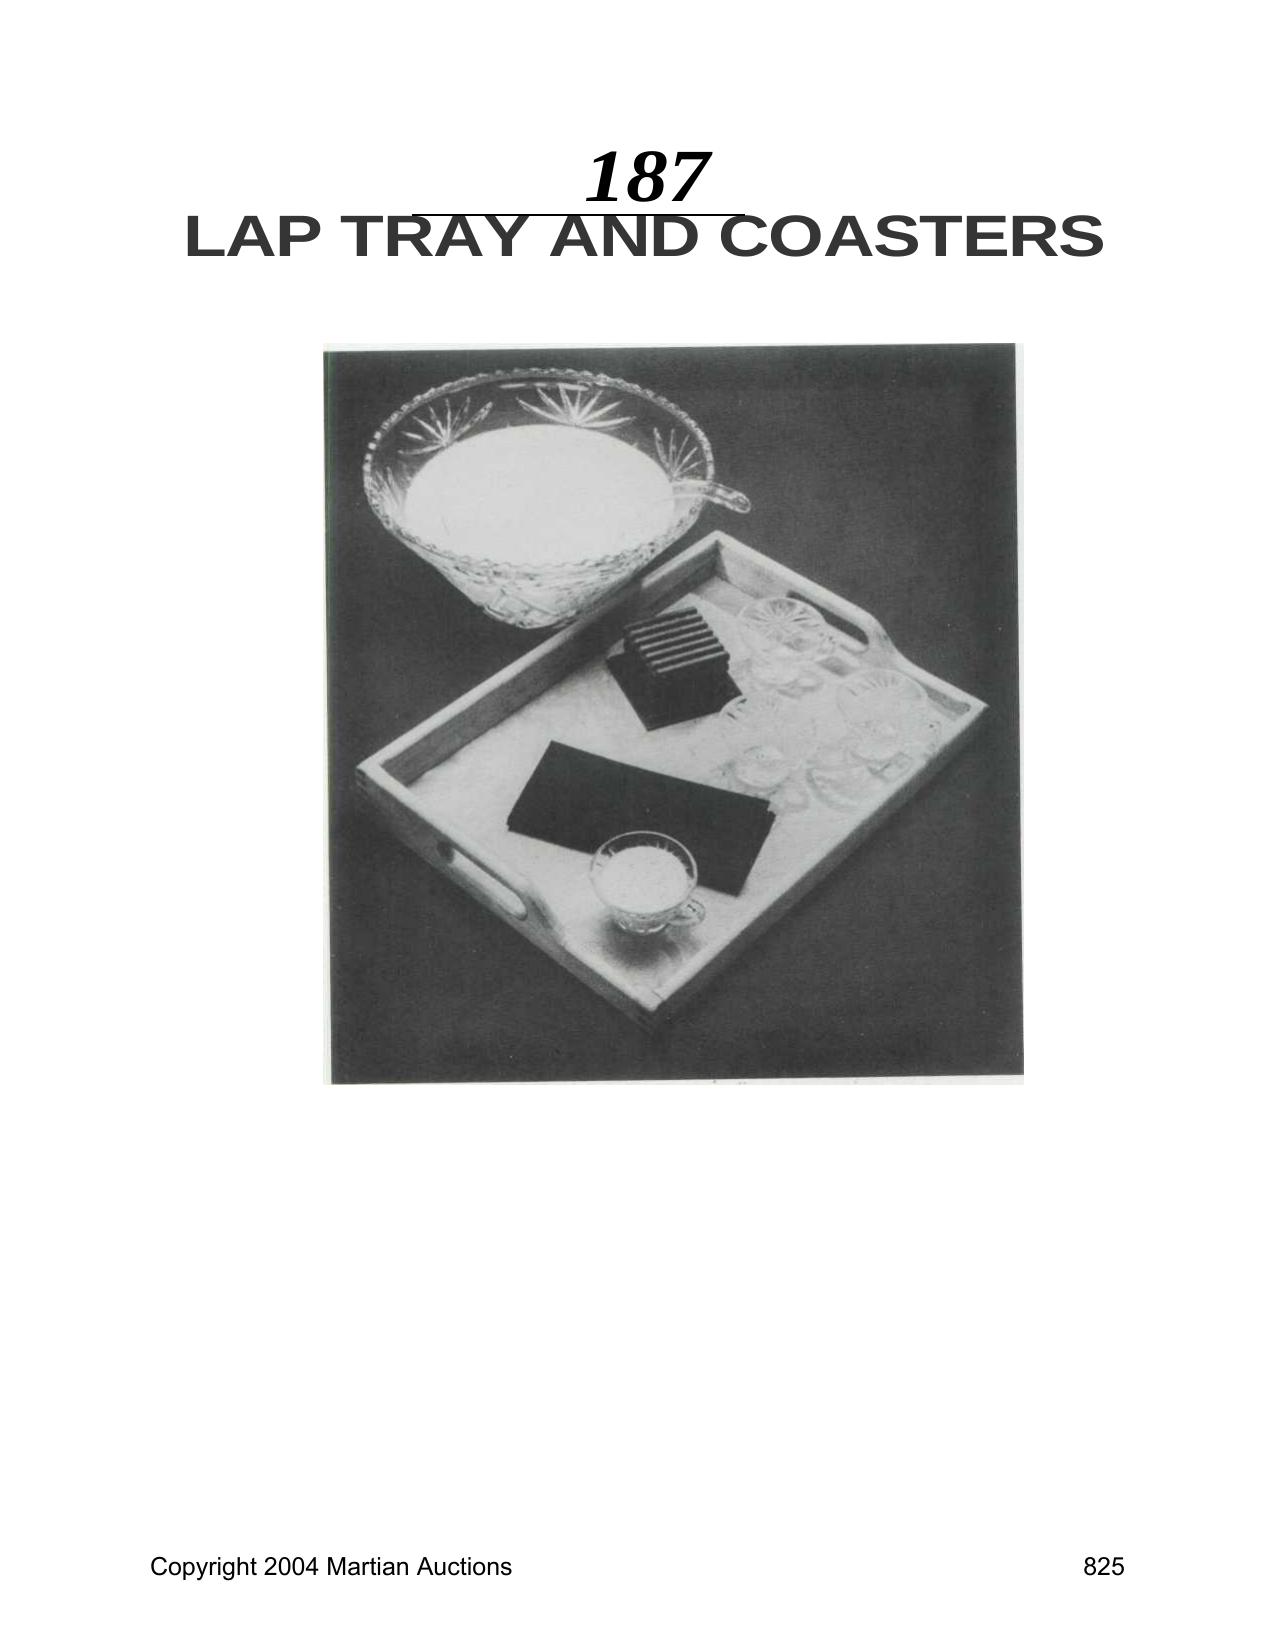 Tray by Lap Tray & Coasters